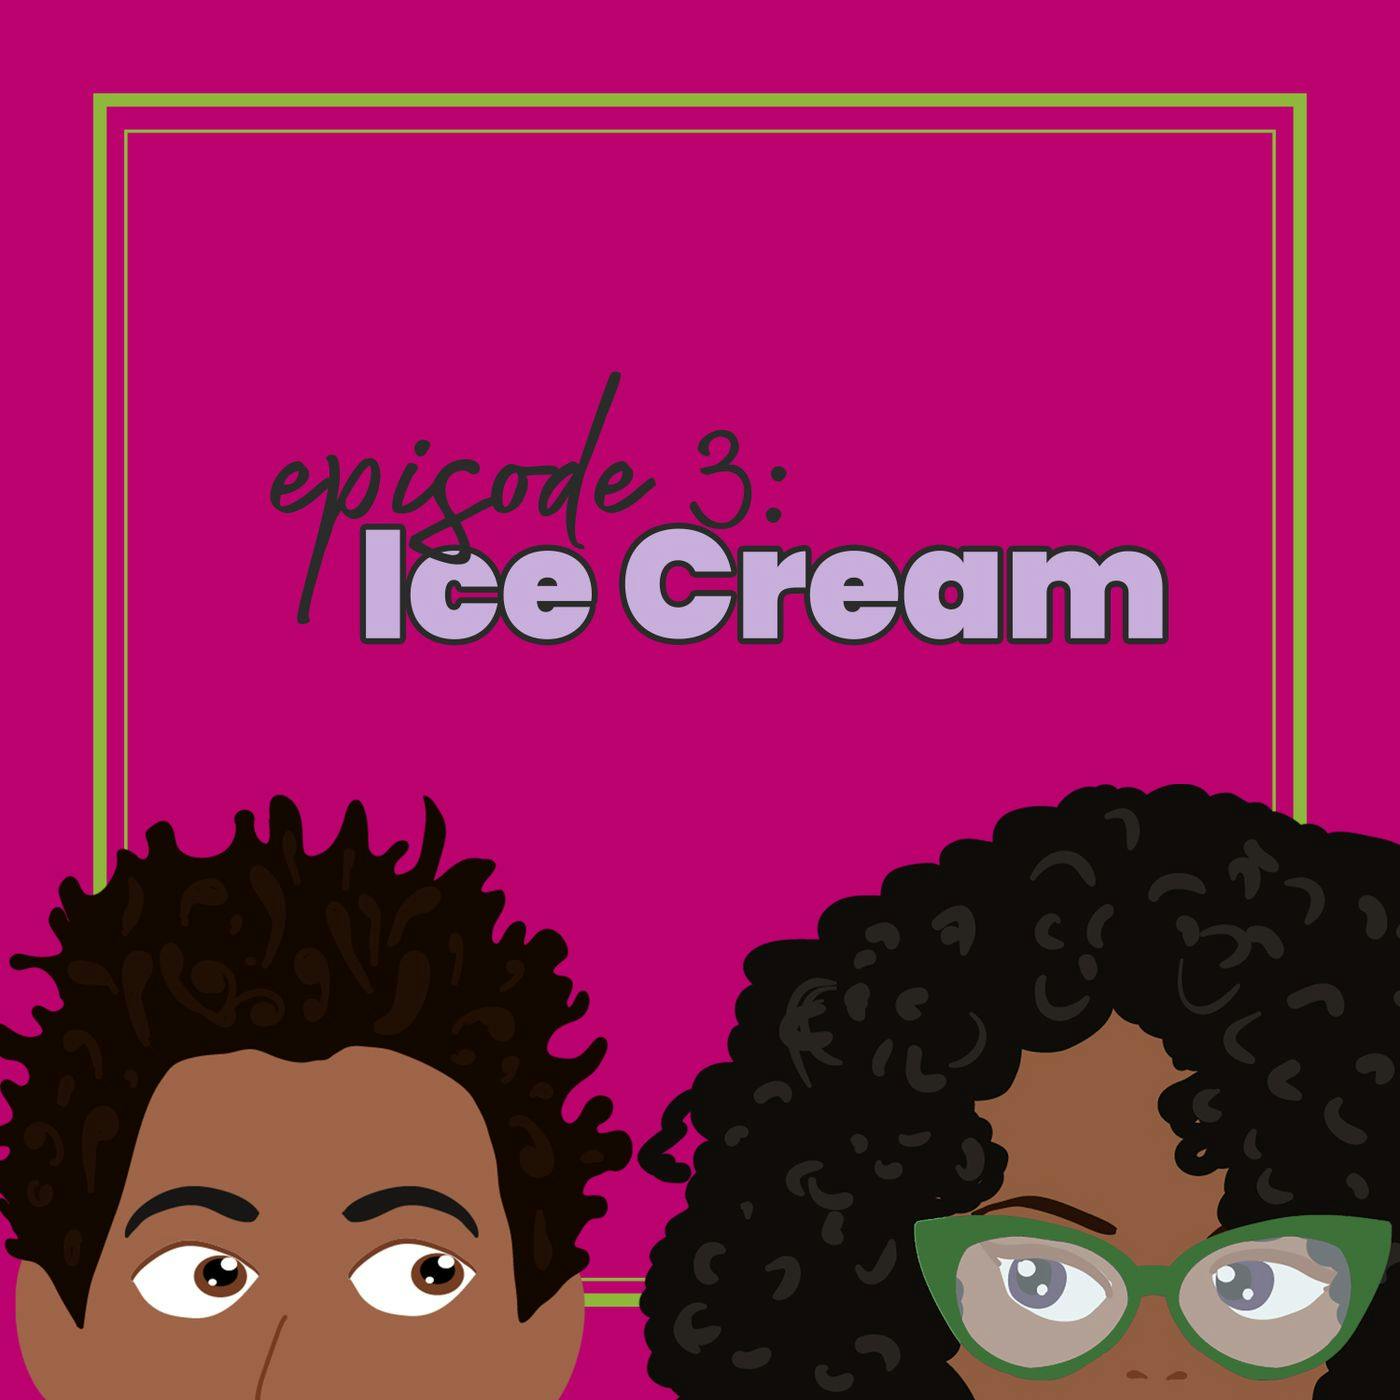 Episode 3: Ice Cream